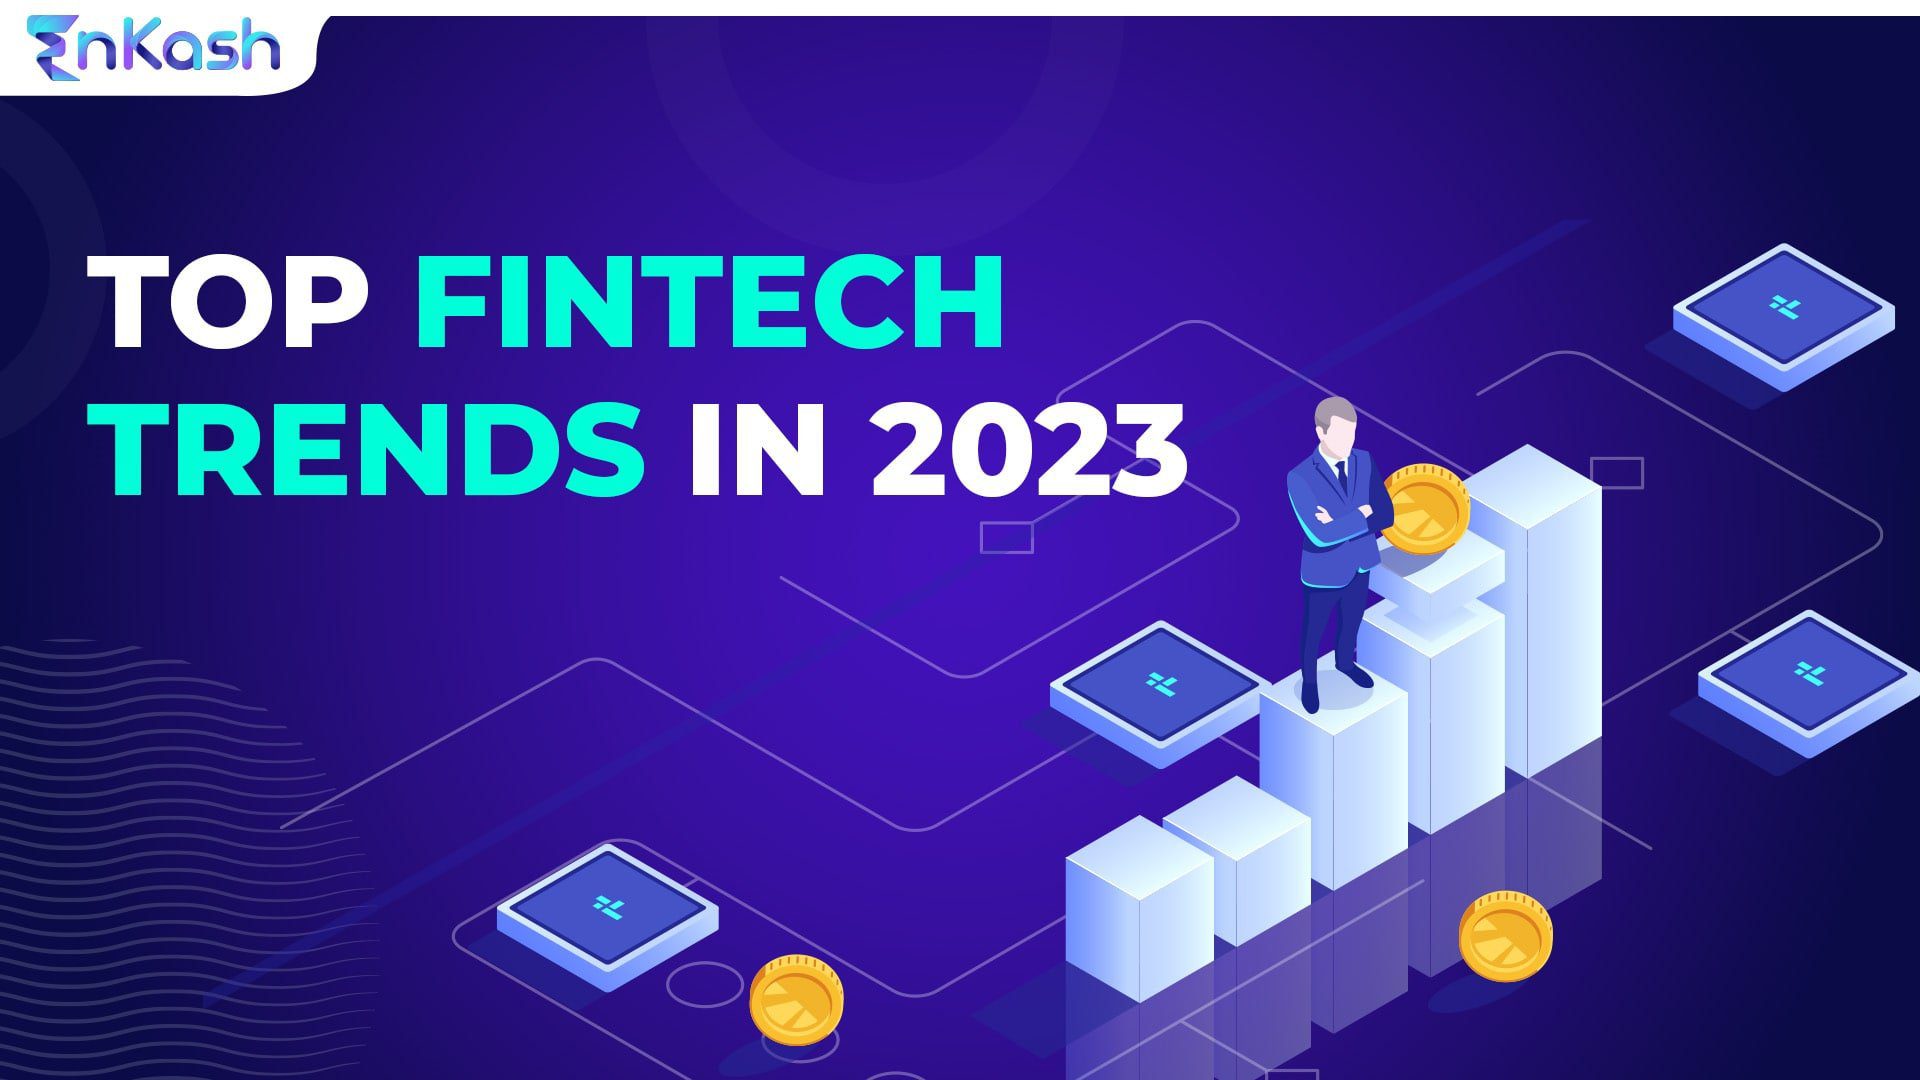 Fintech trends in 2023